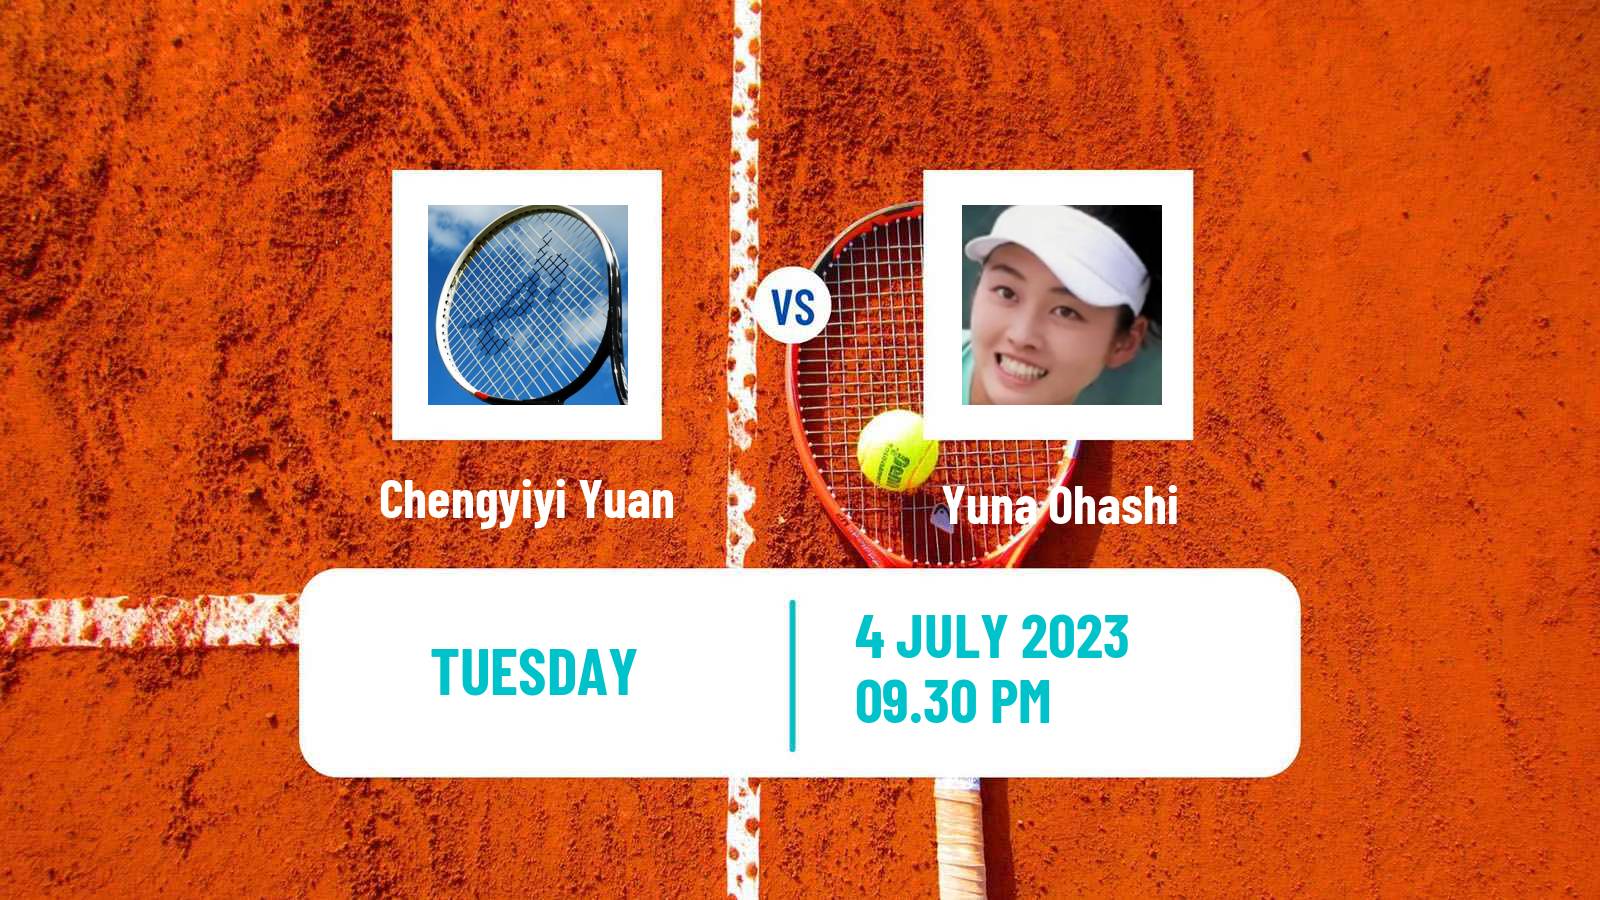 Tennis ITF W15 Tianjin 4 Women Chengyiyi Yuan - Yuna Ohashi